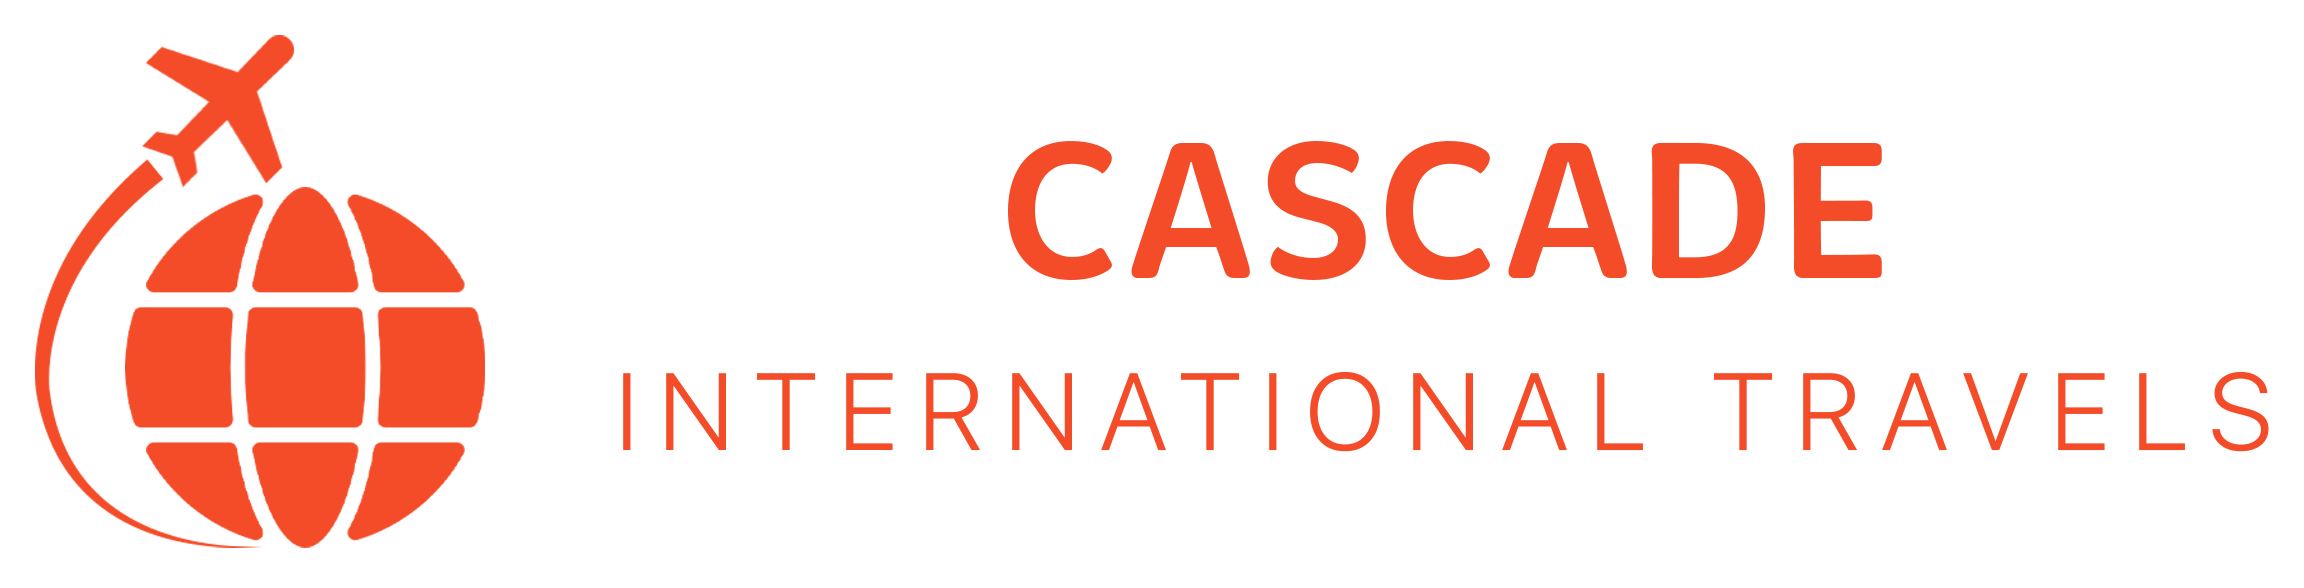 Cascade International Travels